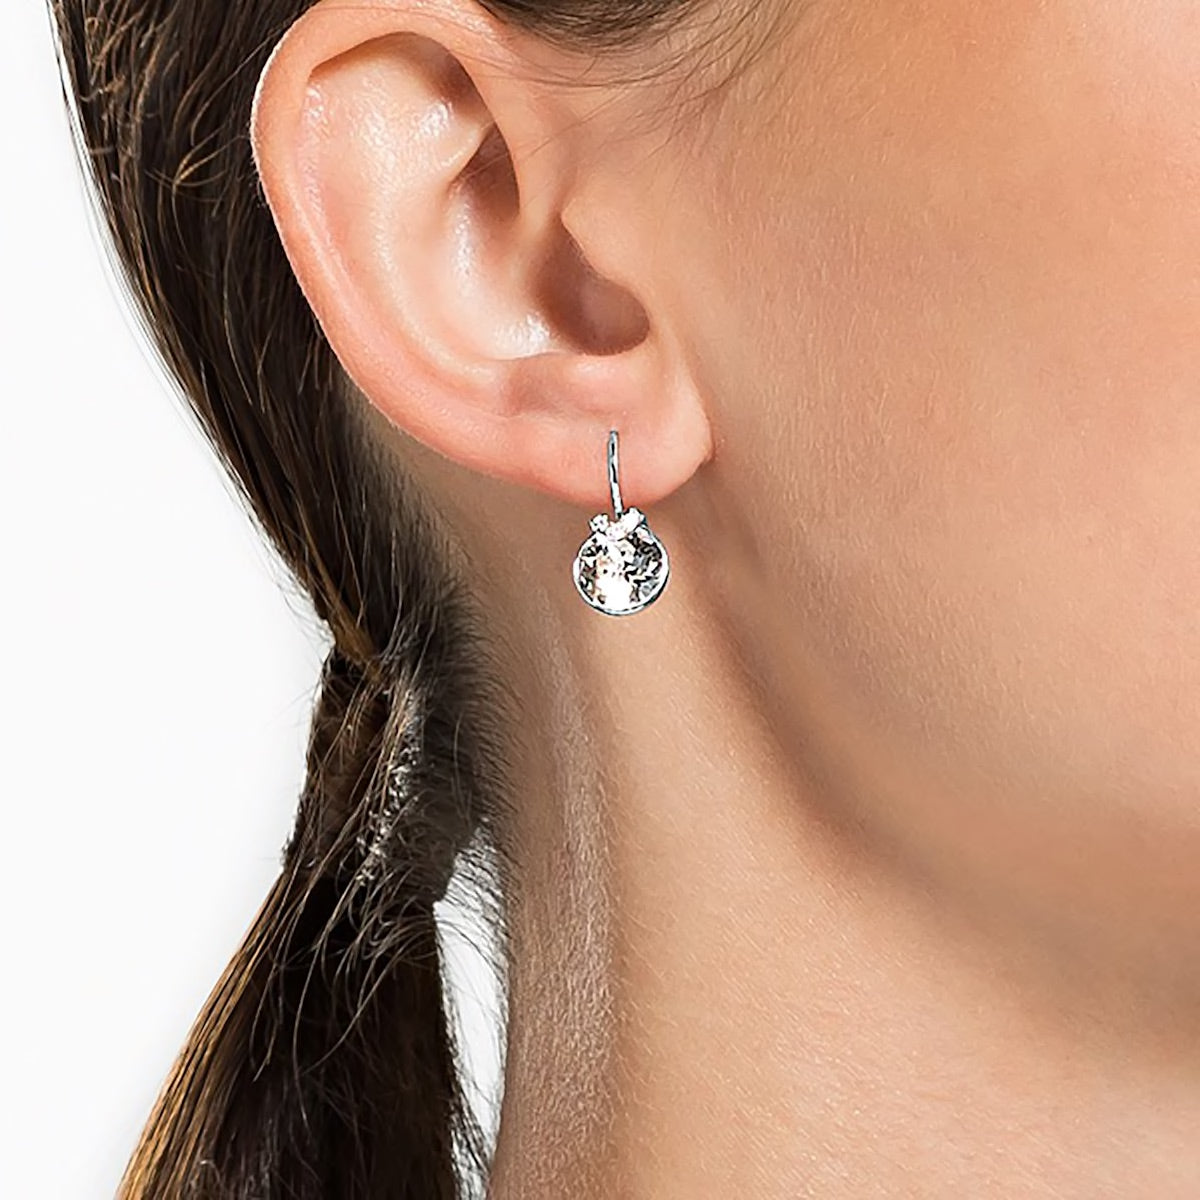 Discover more than 201 swarovski bella v earrings best